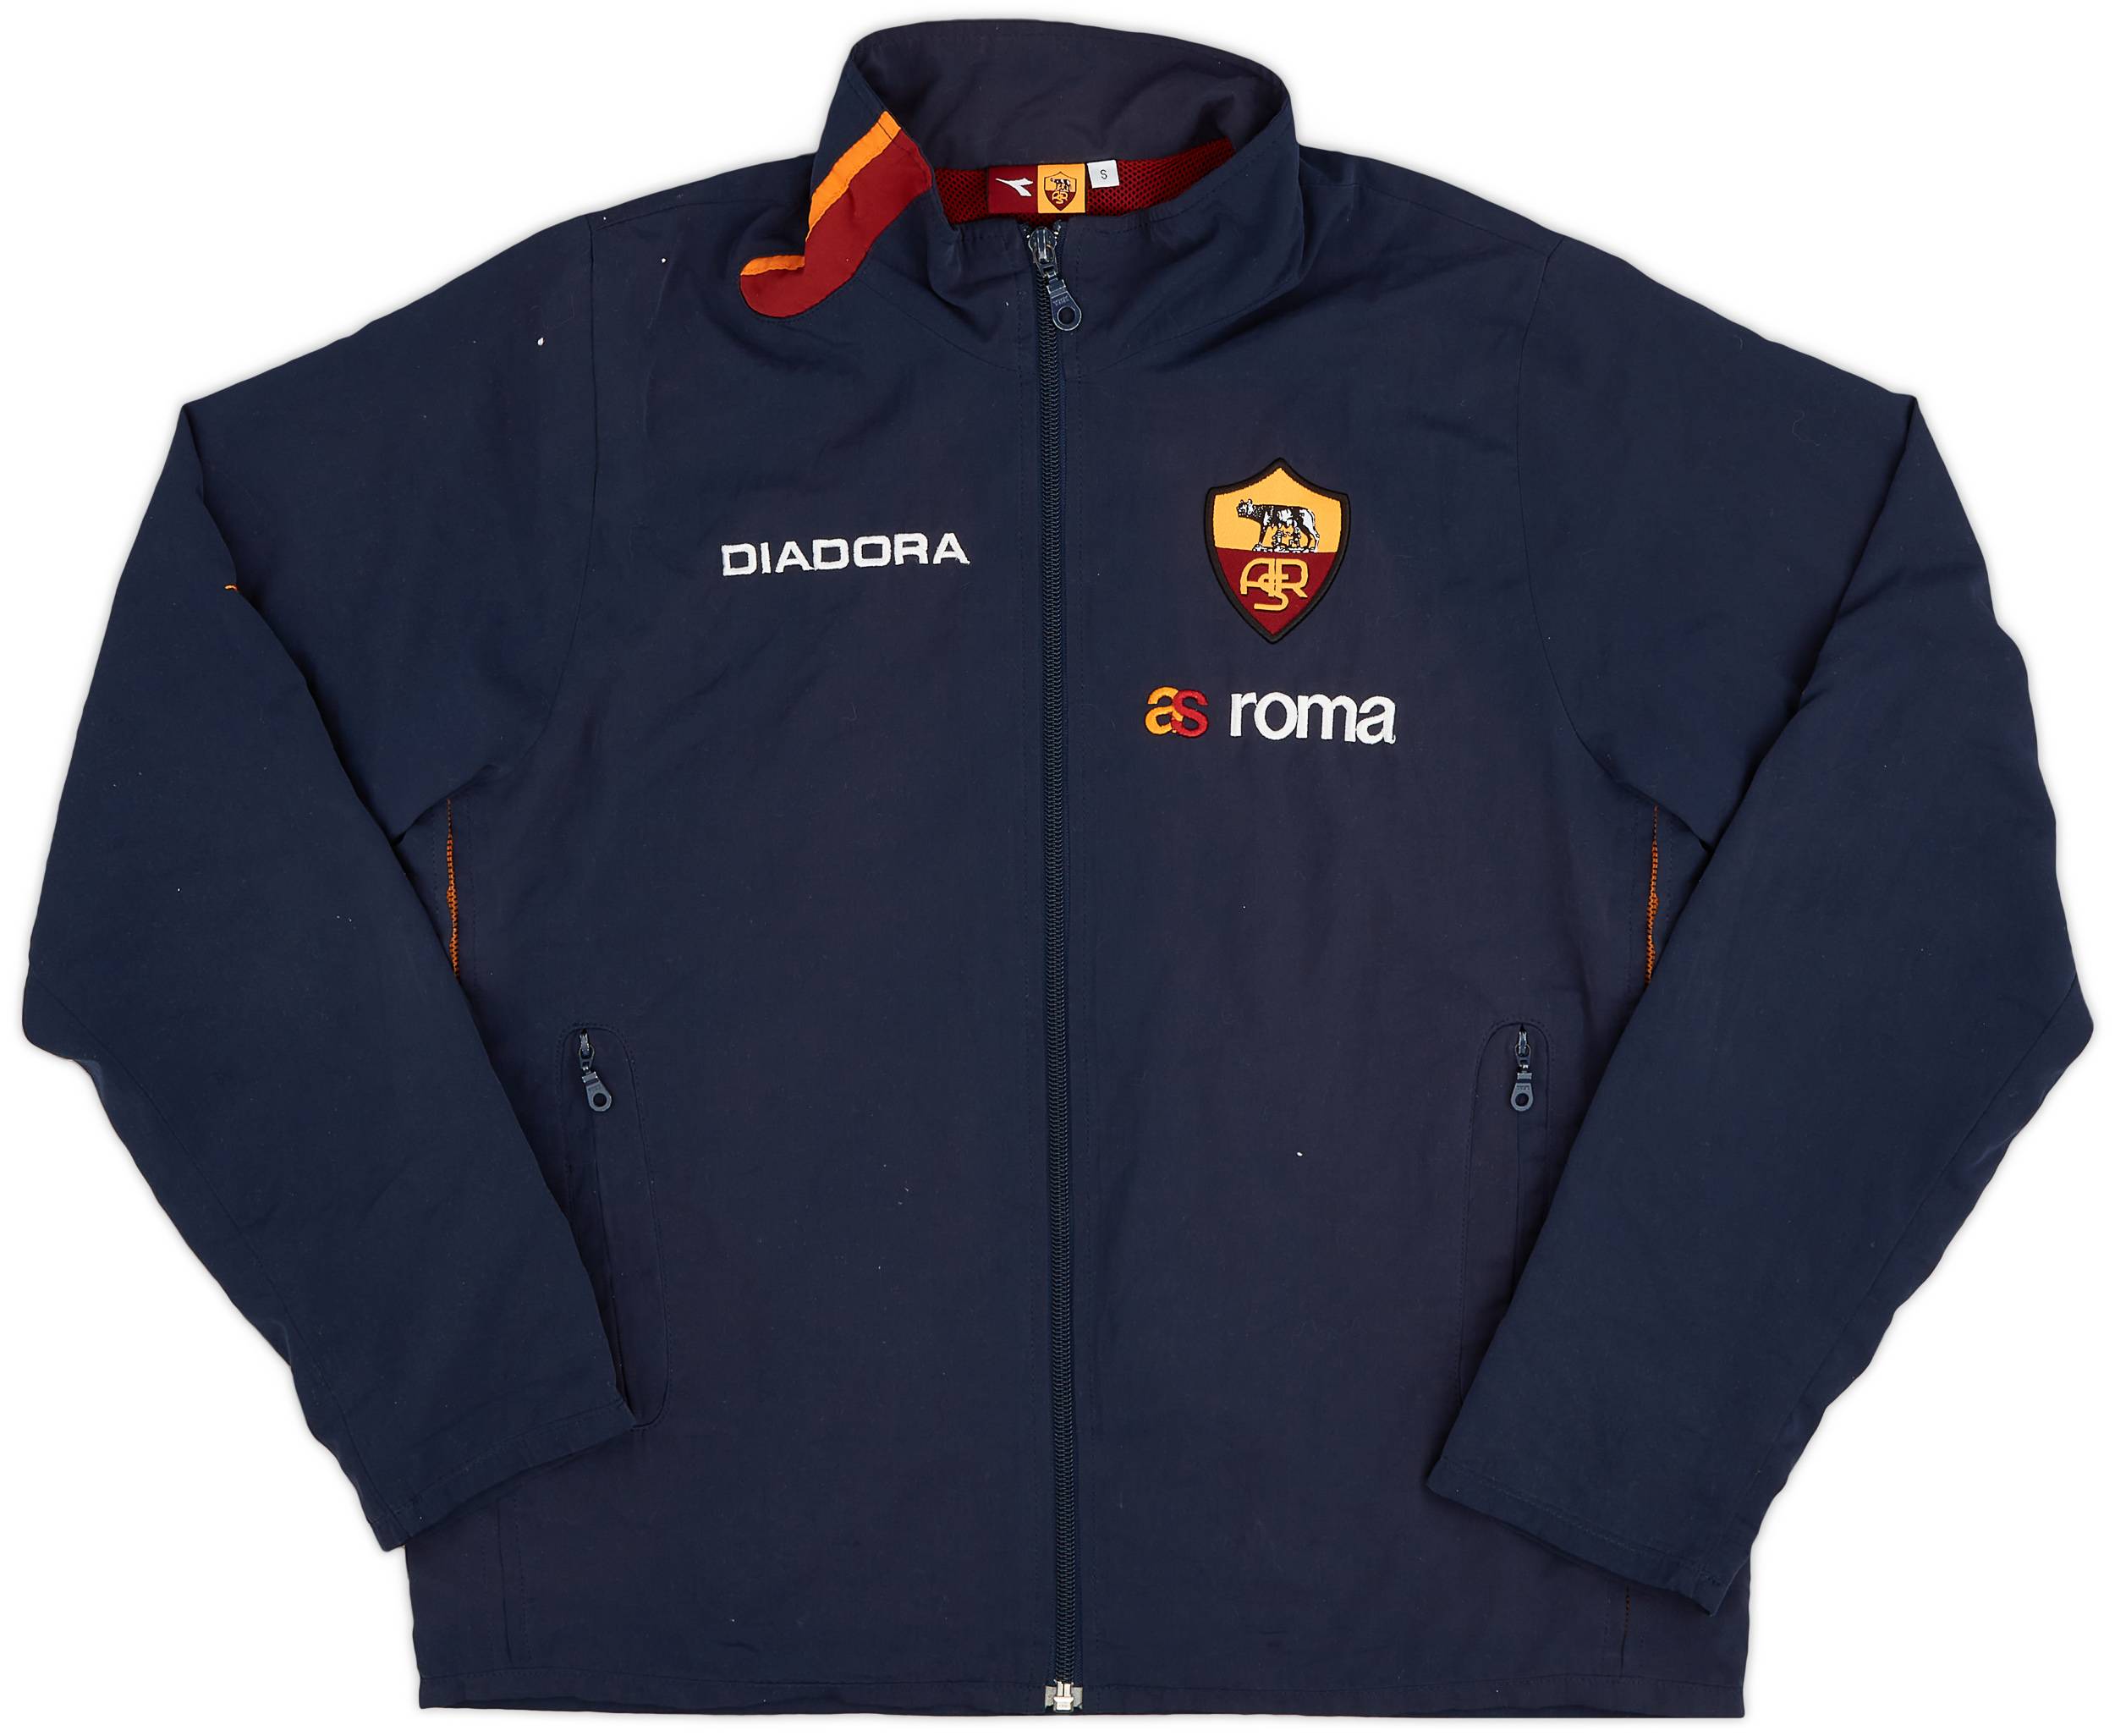 2003-04 Roma Diadora Track Jacket - 9/10 - (S)